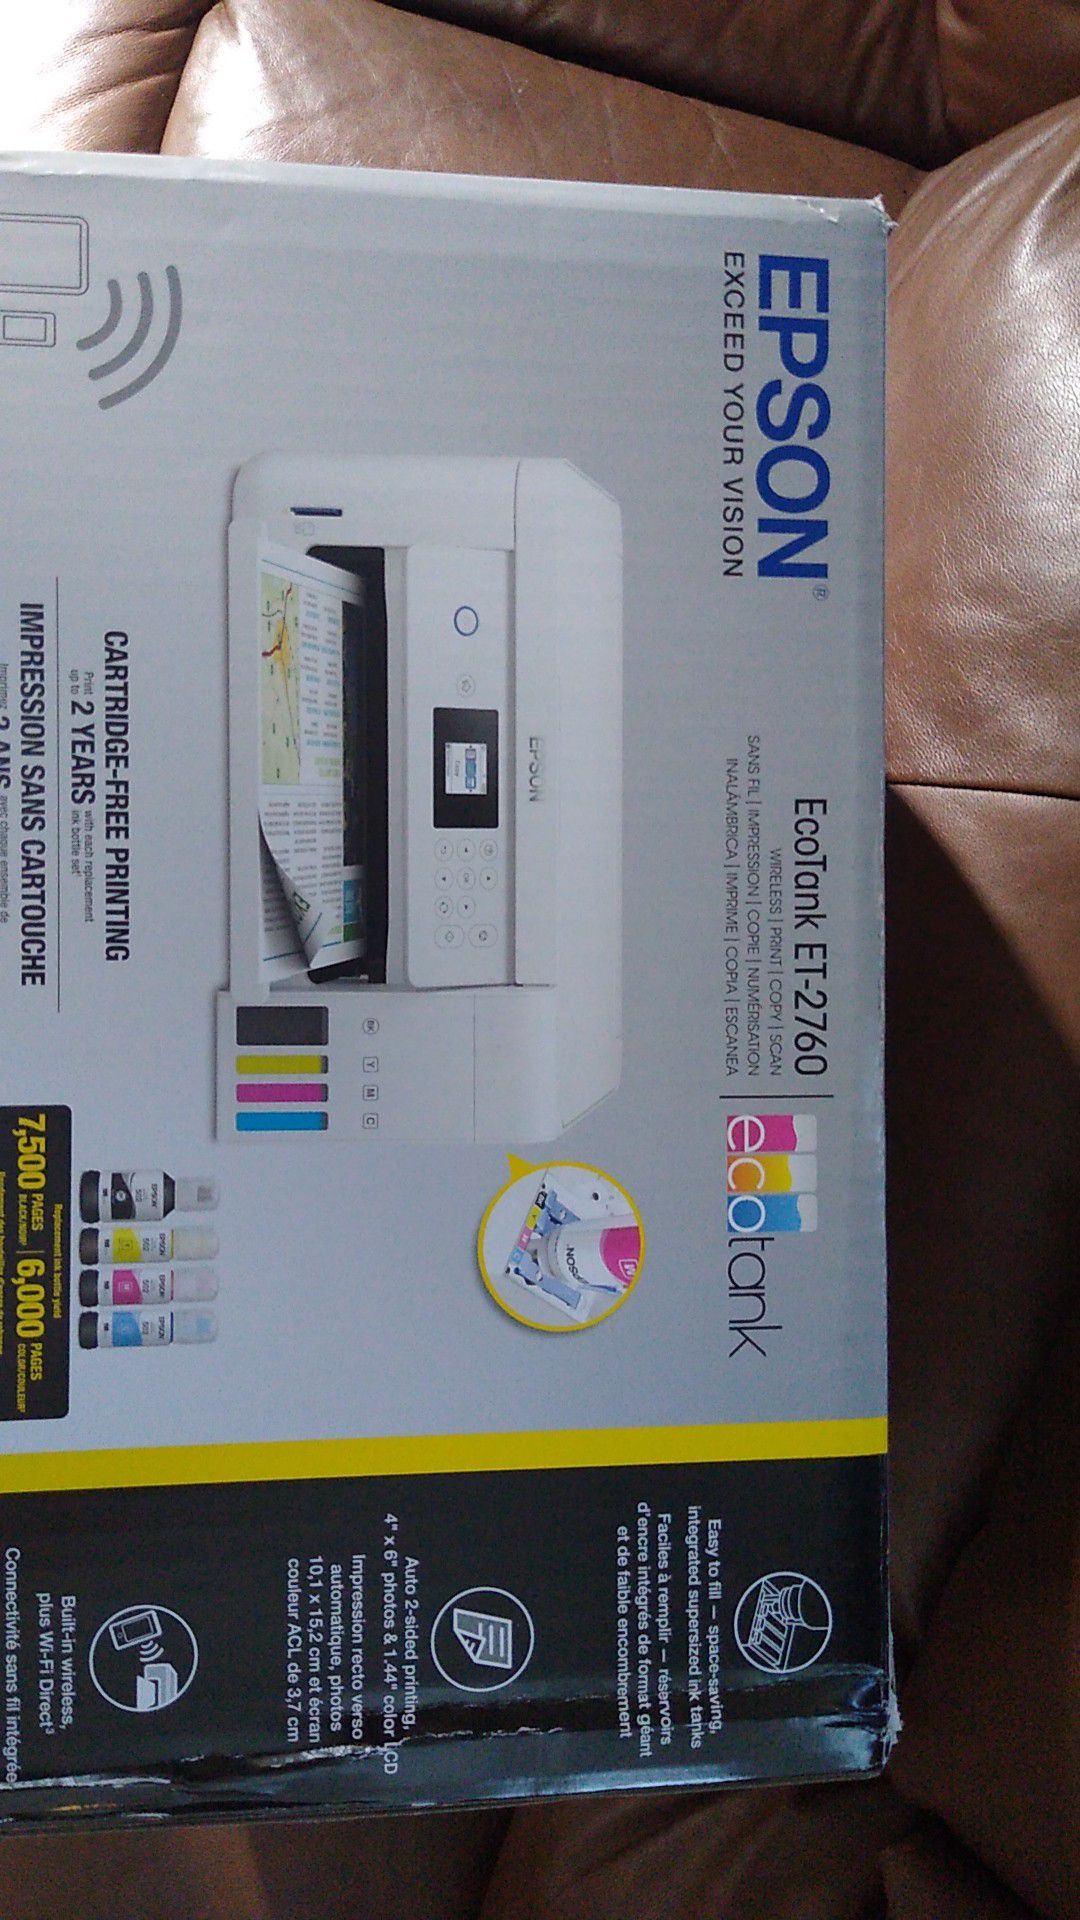 Brand new still in the box color printer